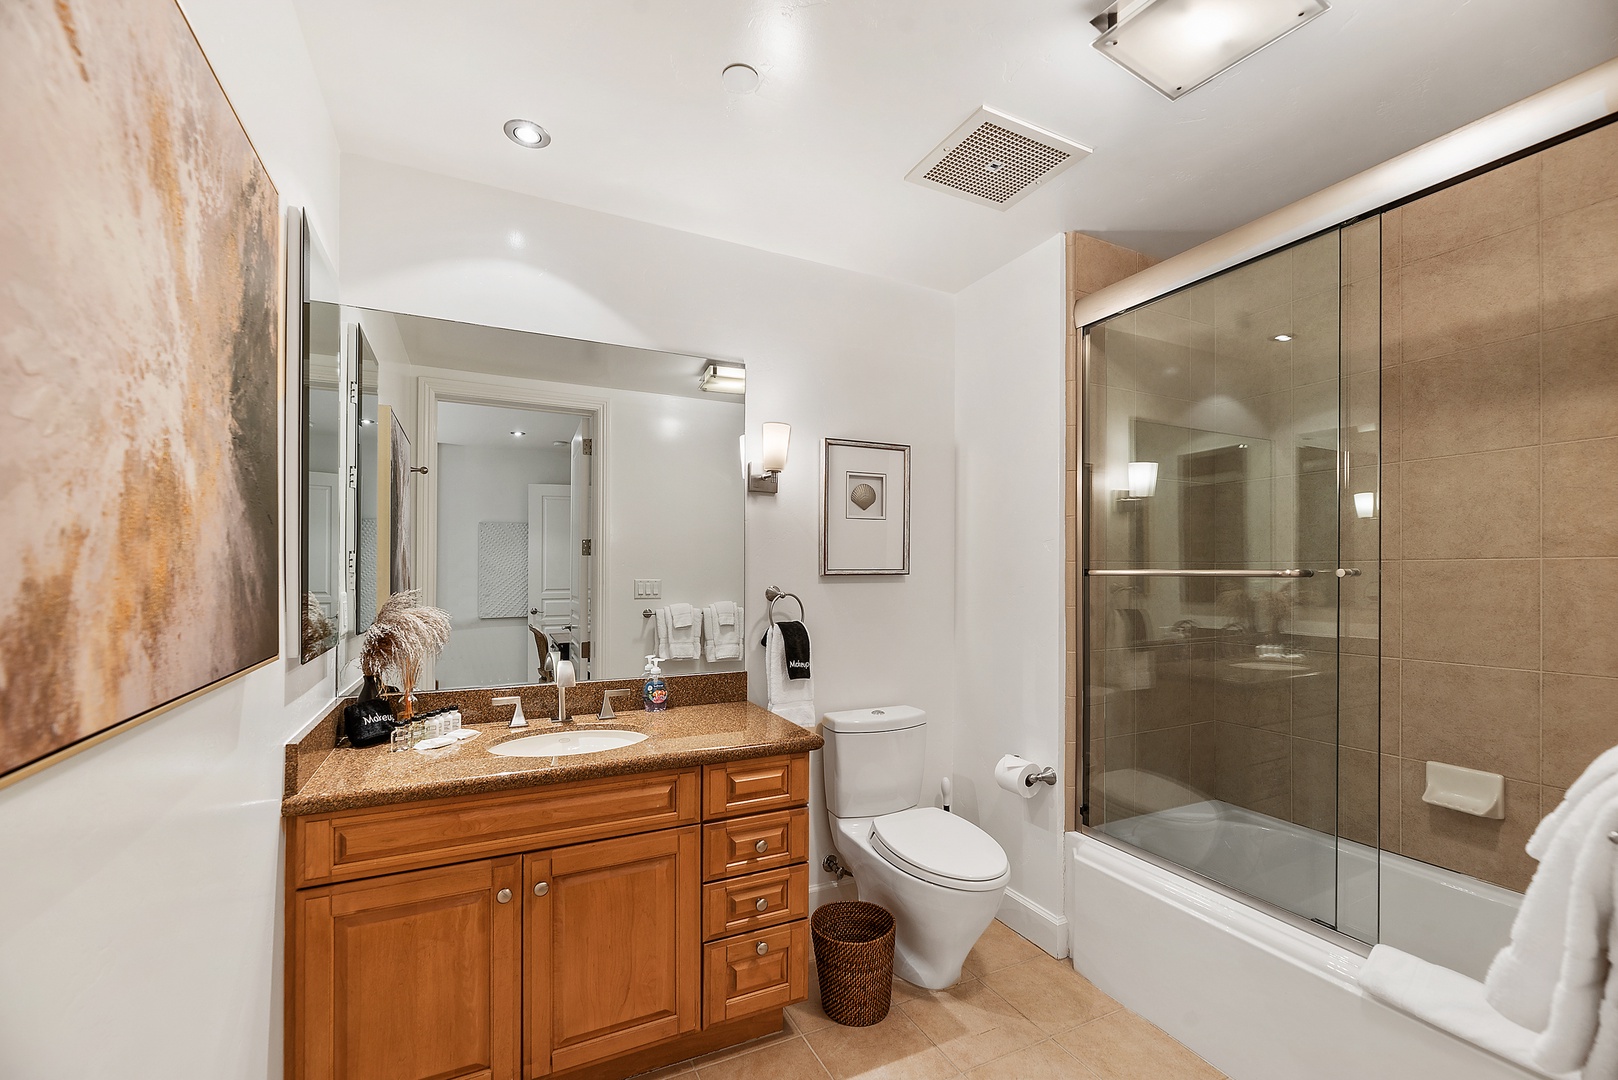 La Jolla Vacation Rentals, Montefaro in the Village of La Jolla - Ensuite Guest bathroom with bathtub